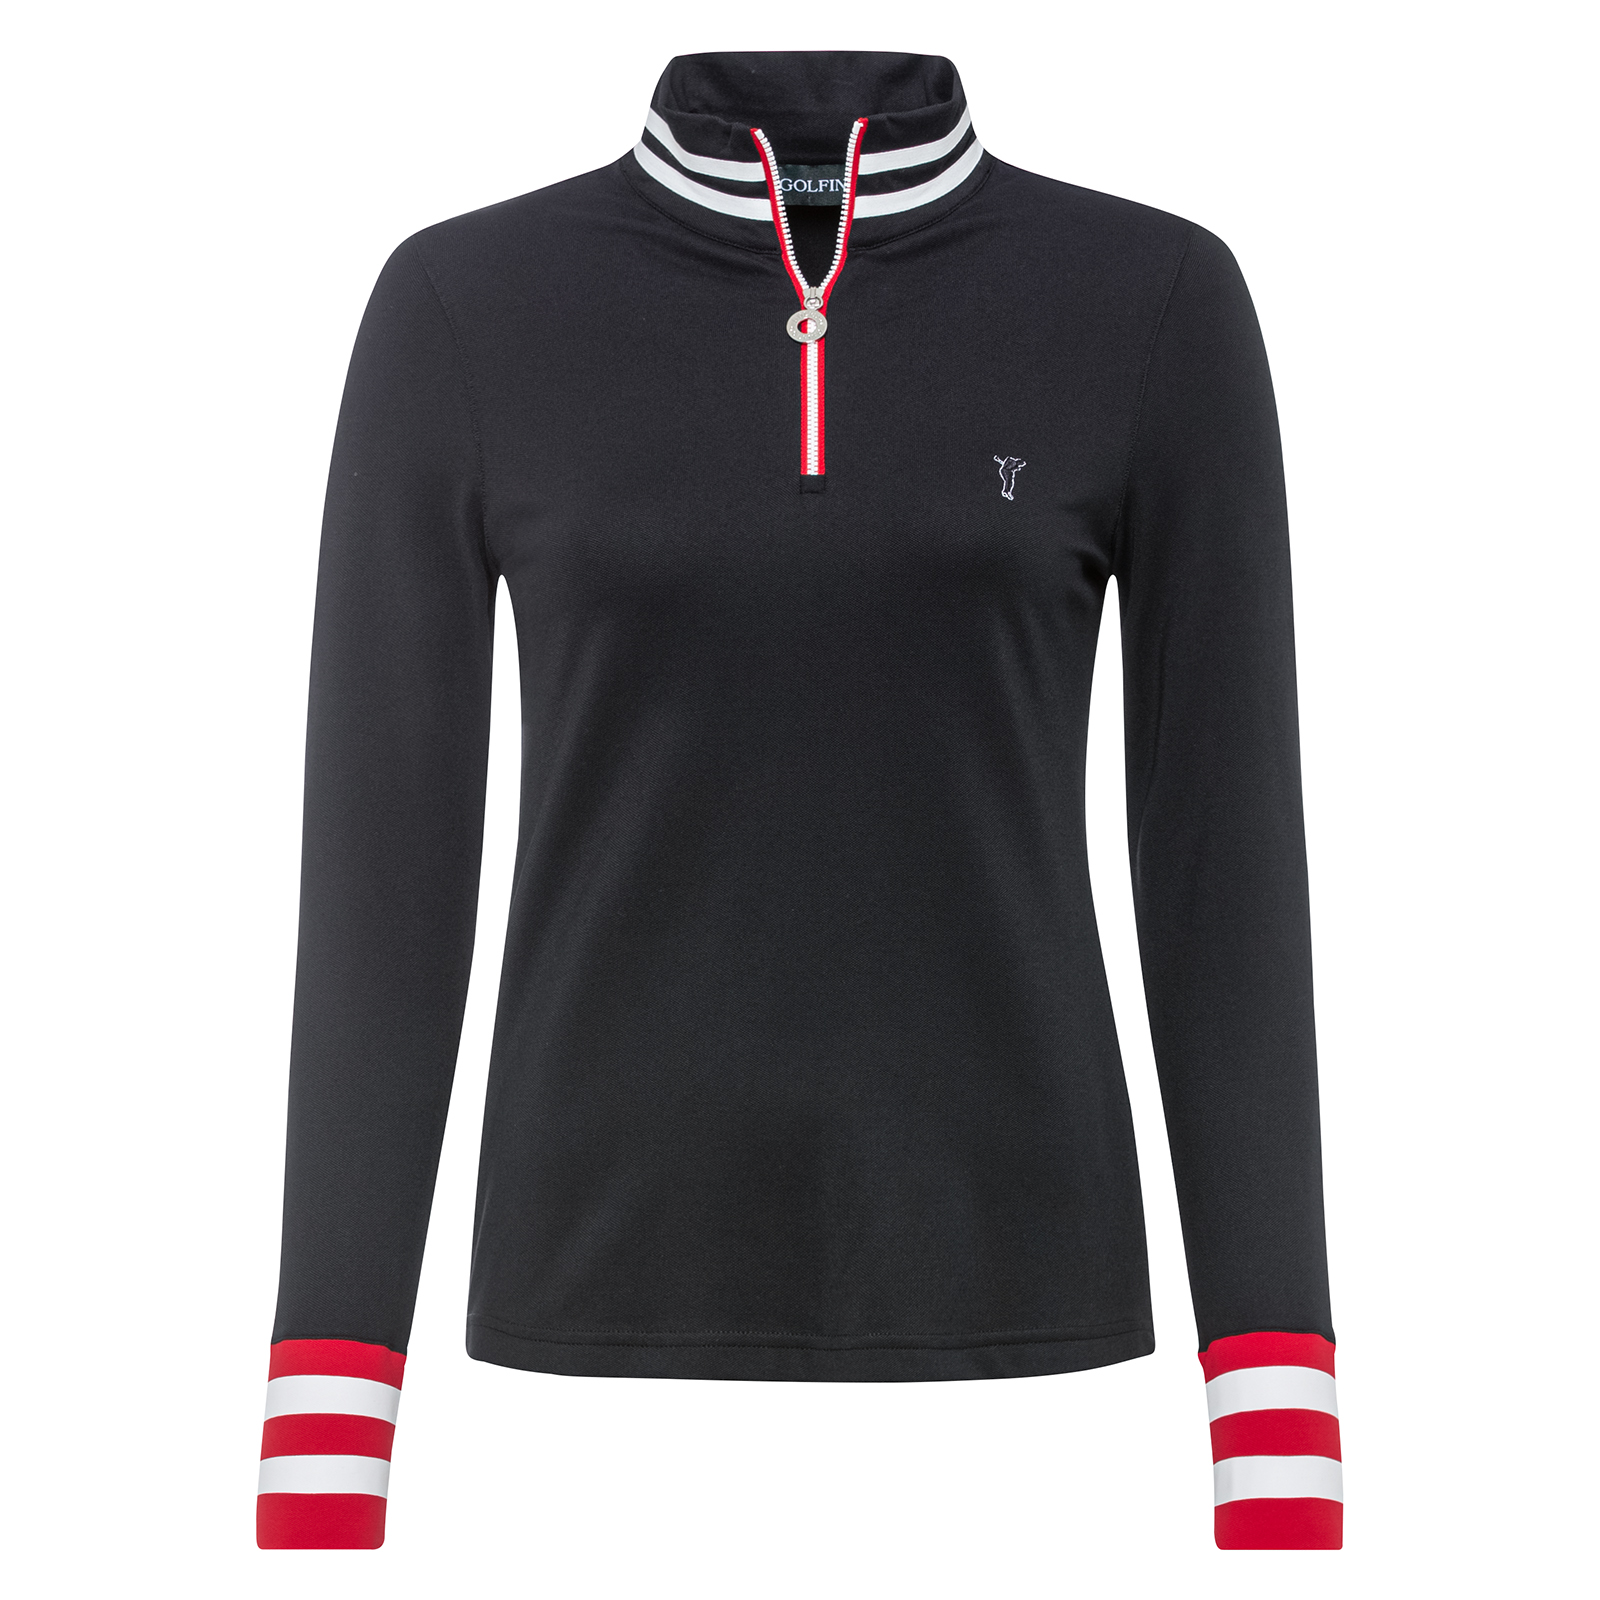 Ladies' modern half-zip golf sweater with moisture management function